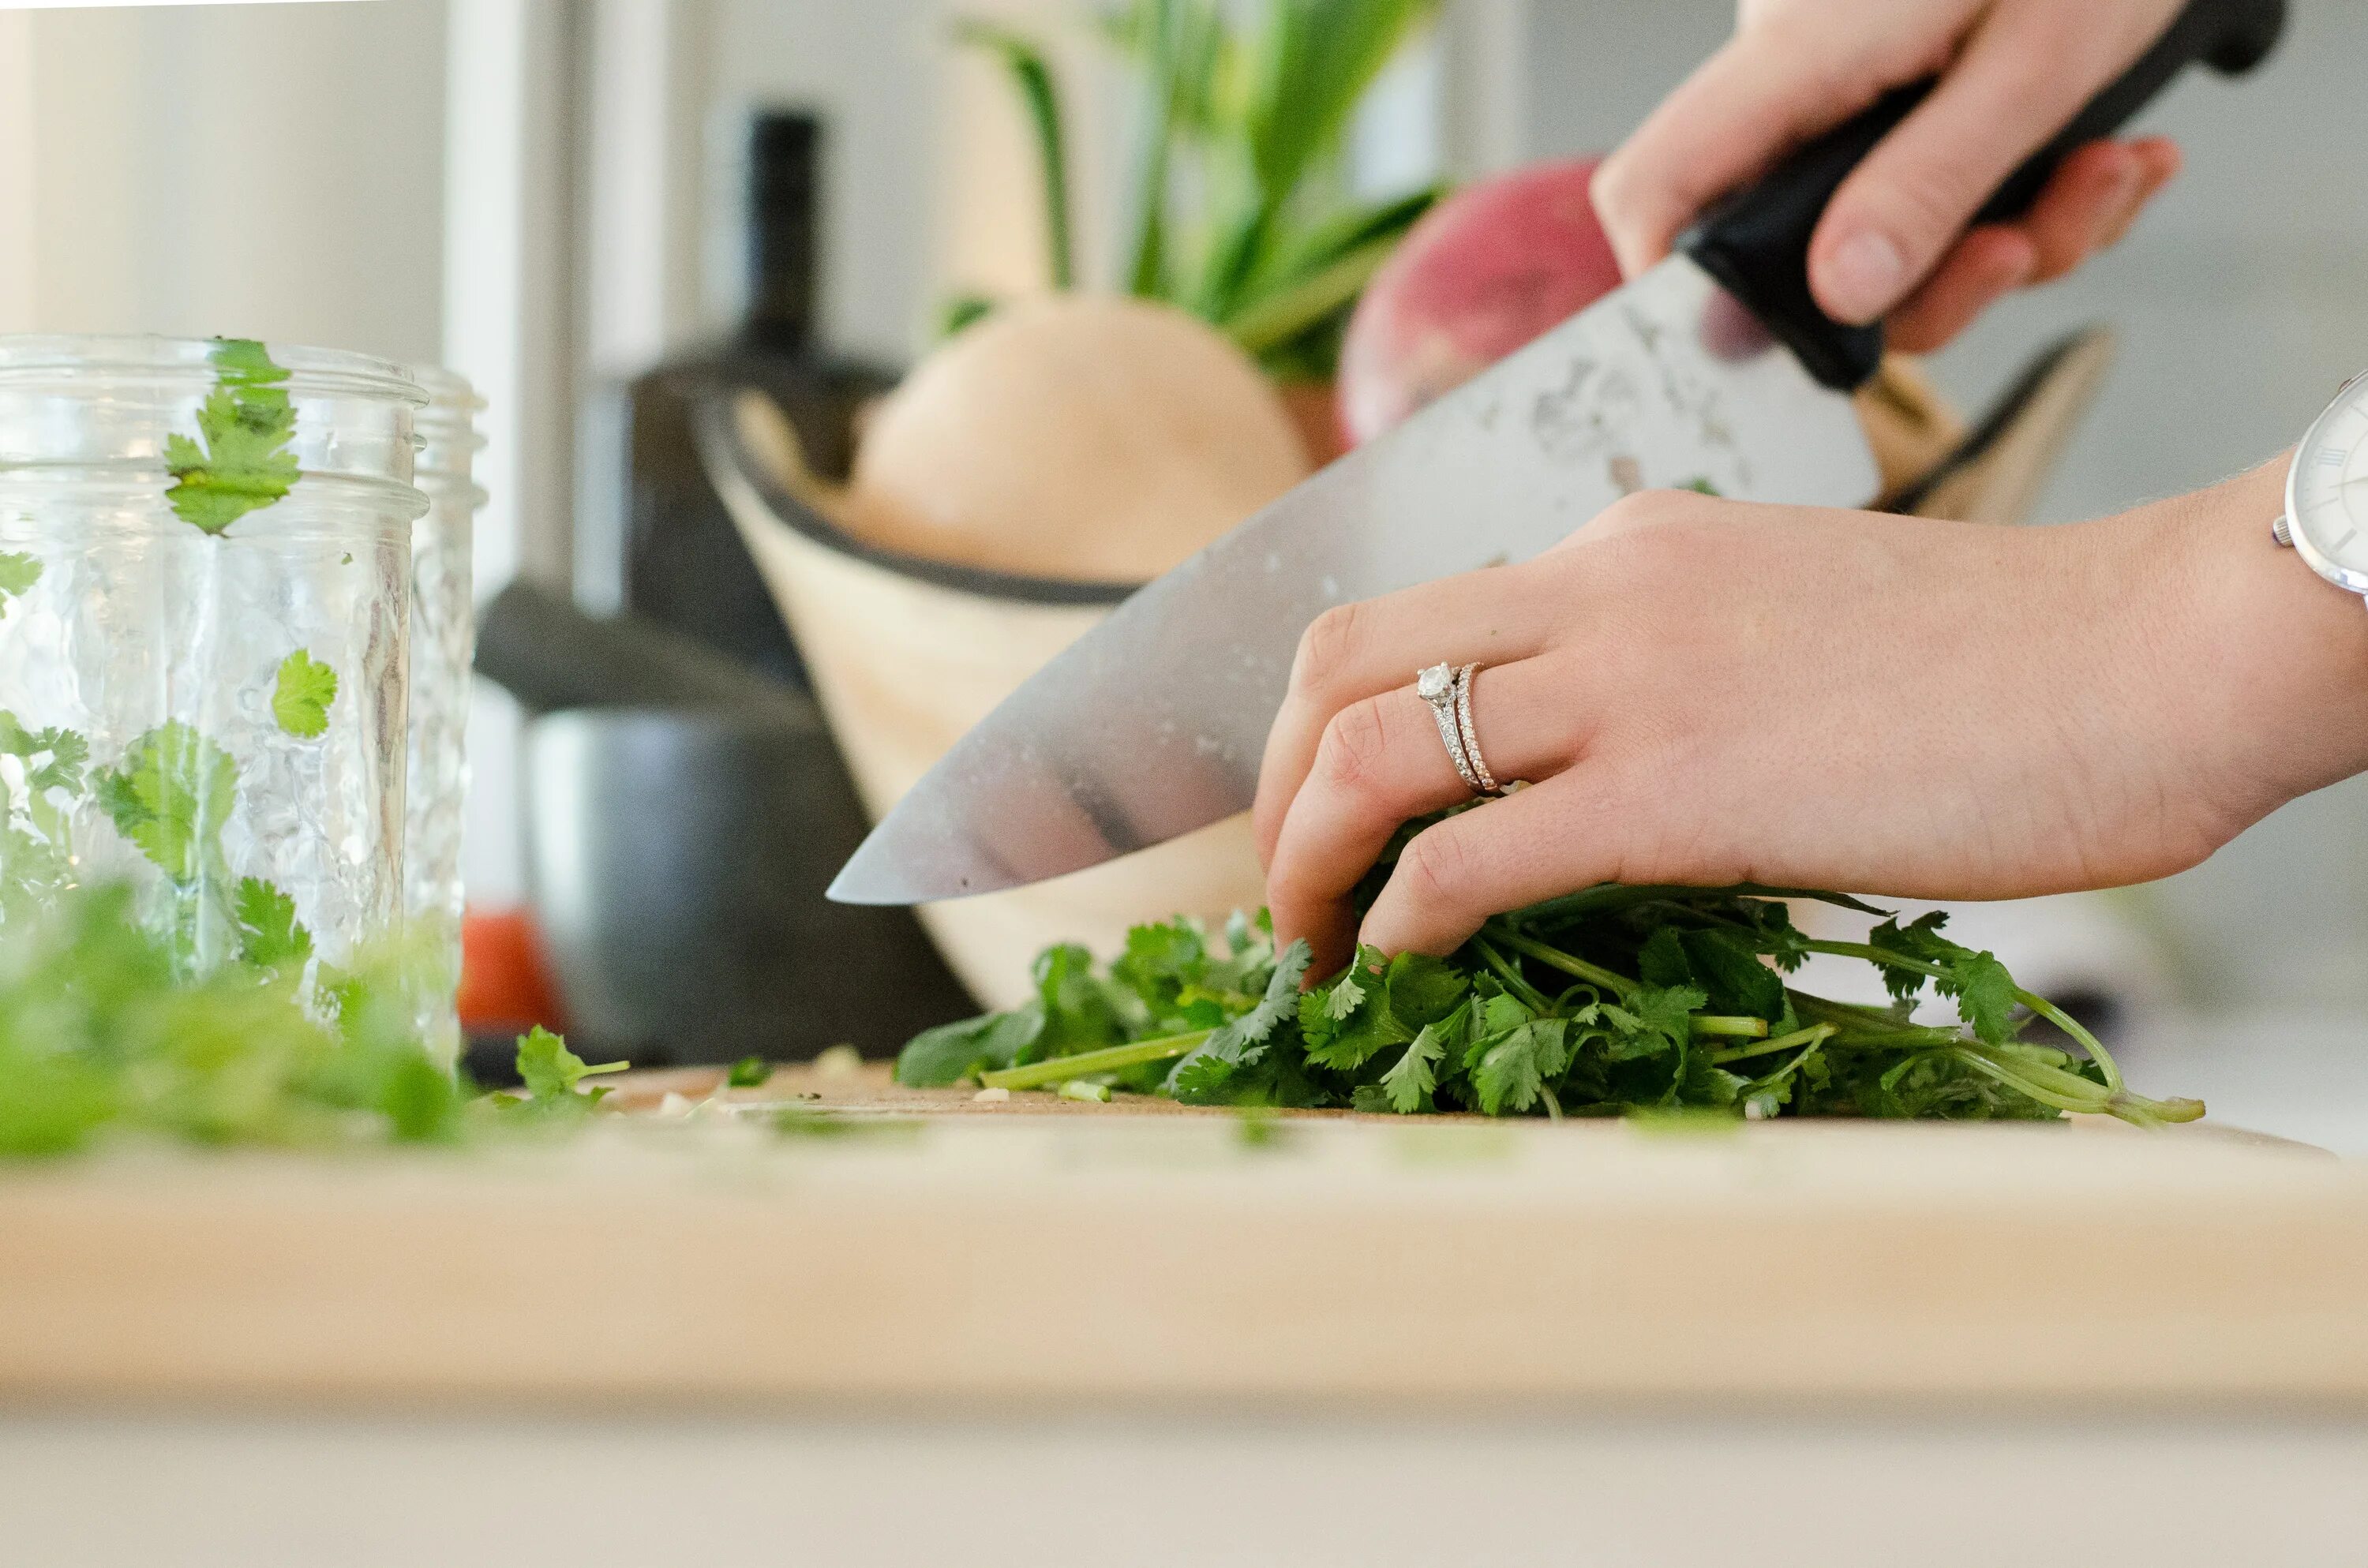 Chop vegetables. Нарезка зелени измельчитель. Польза протертых блюд. Вода для приготовления пищи. Нож для зелени фото.